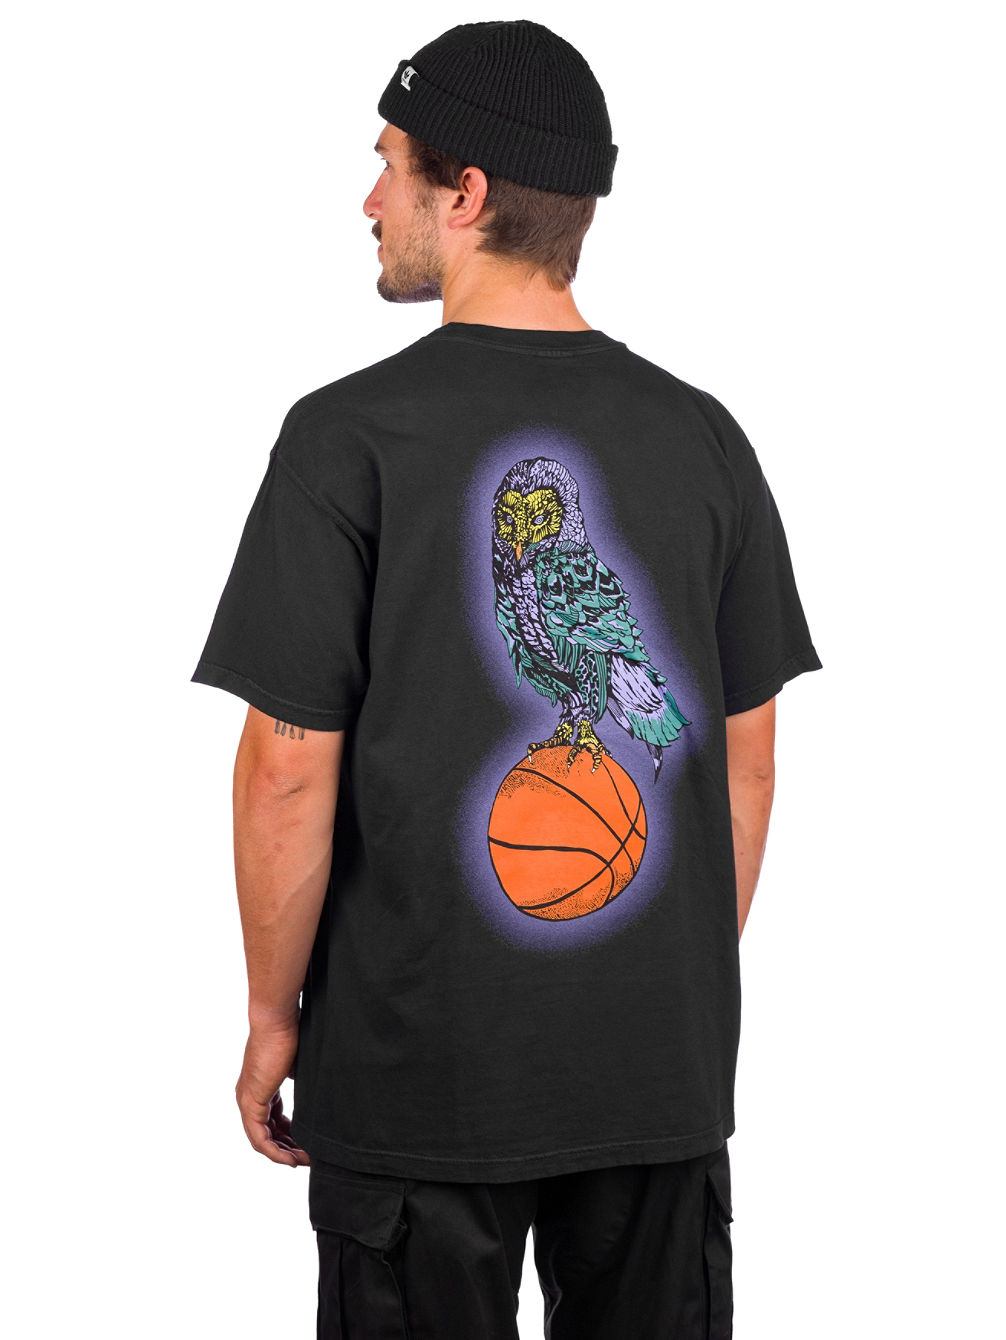 Hooter Shooter Garment Dyed T-Shirt